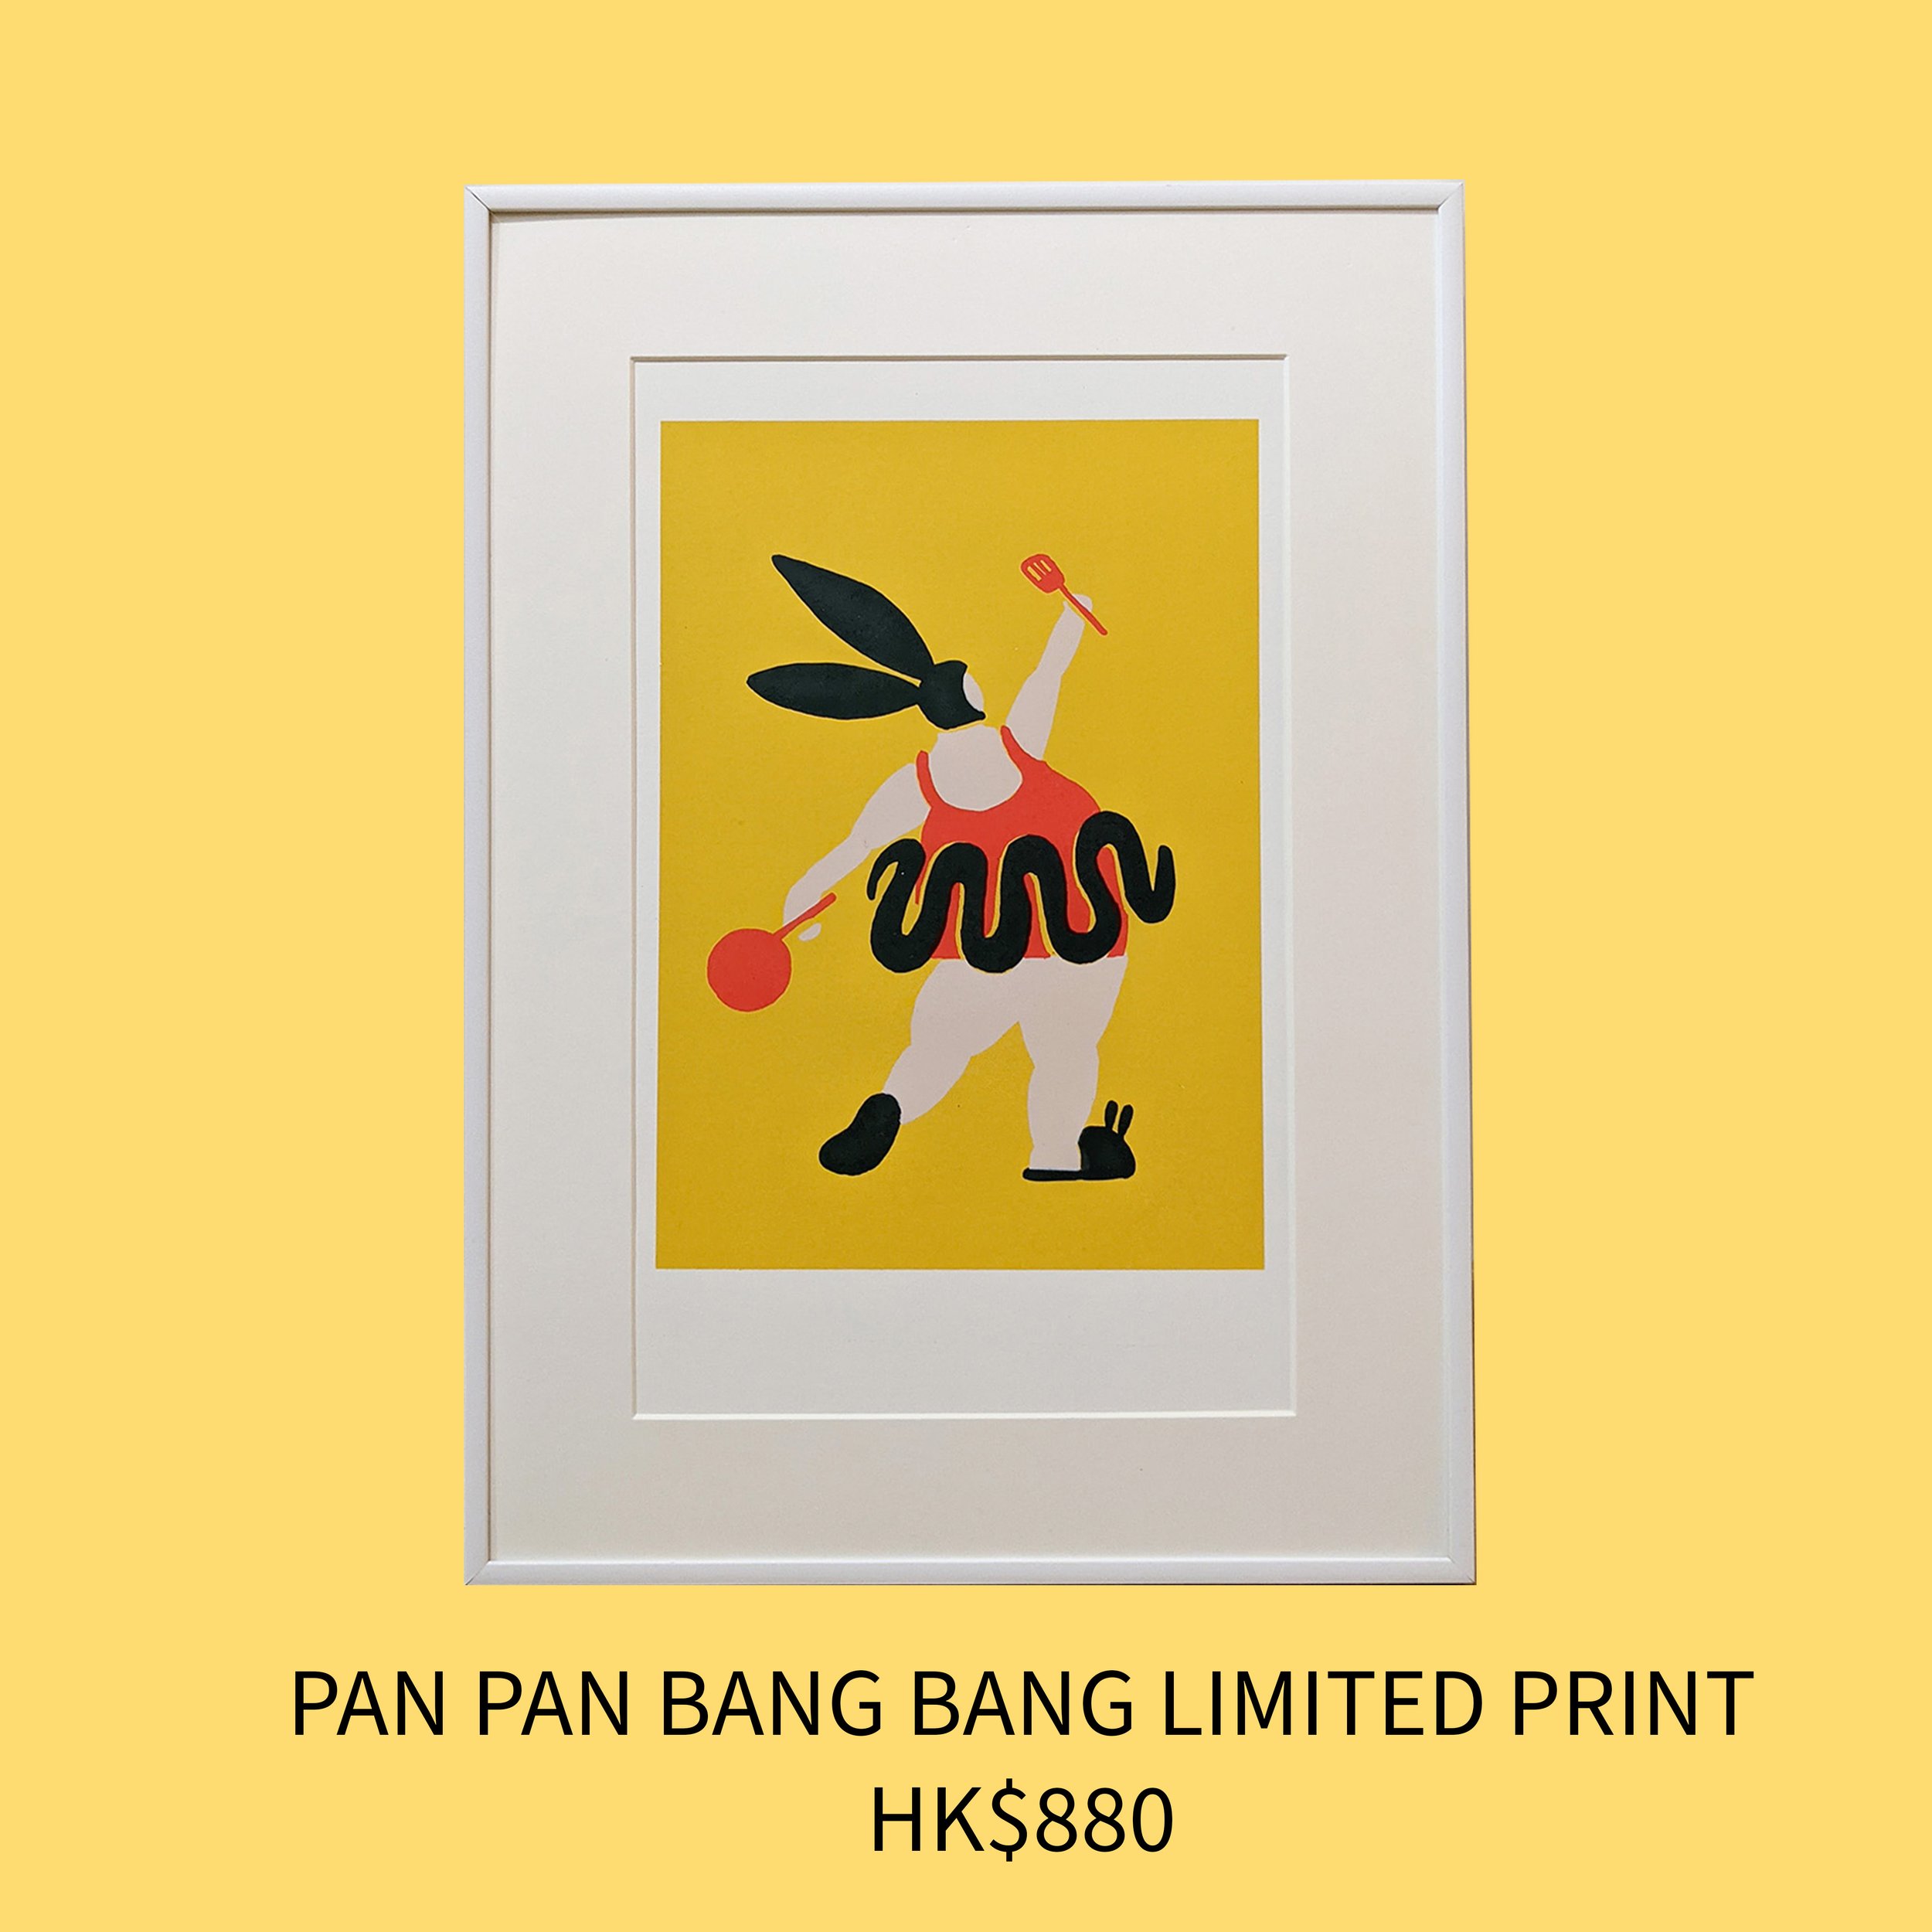 Pan Pan Bang Bang Limited Print